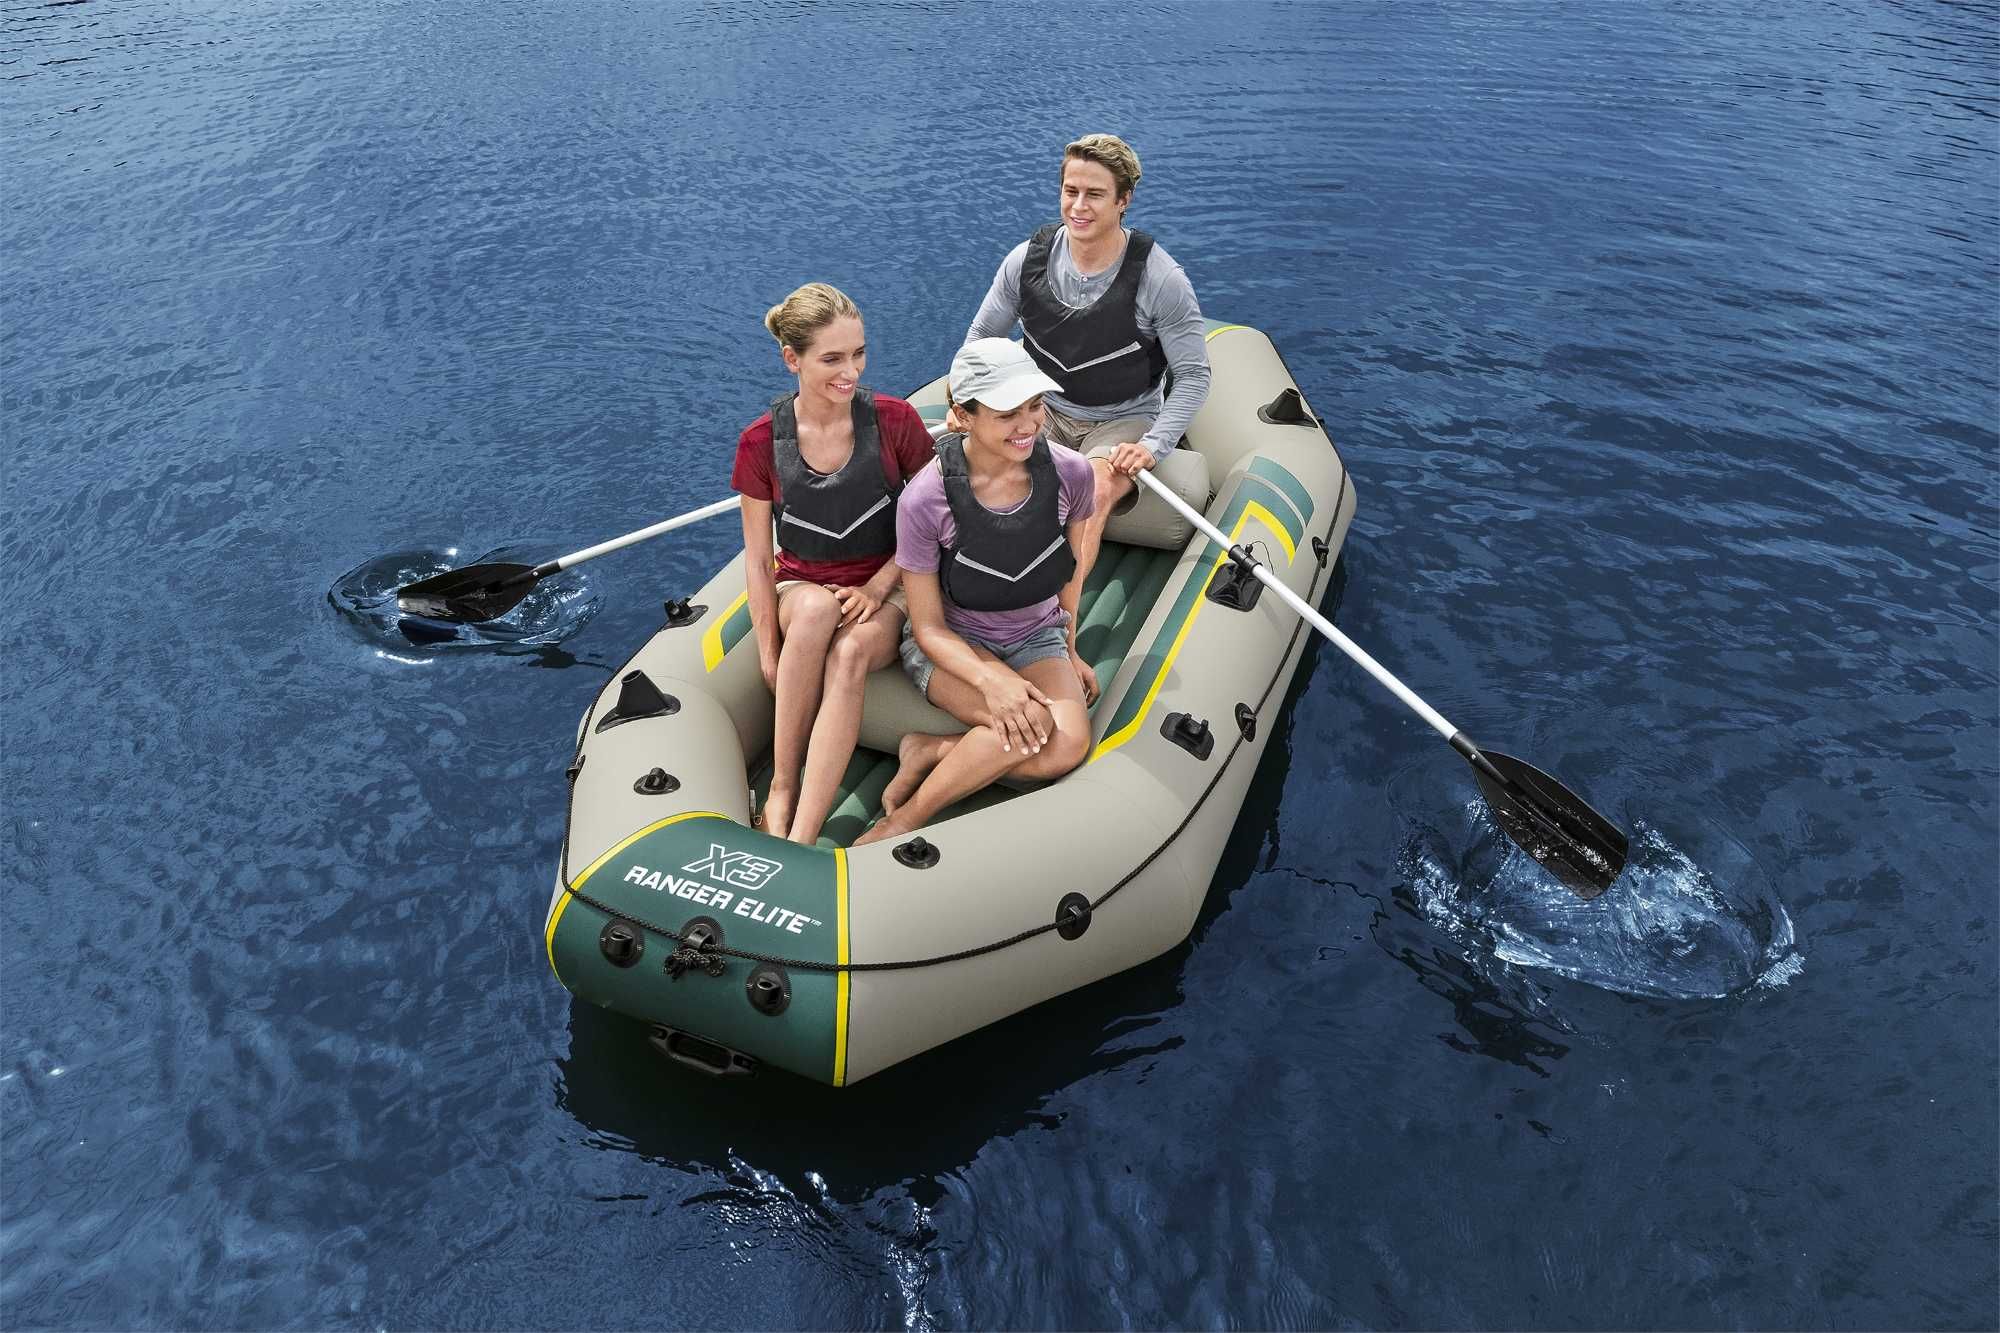 wzmocniony ponton wędkarski turystyczny 300 x150 x46 cm do max 400 kg